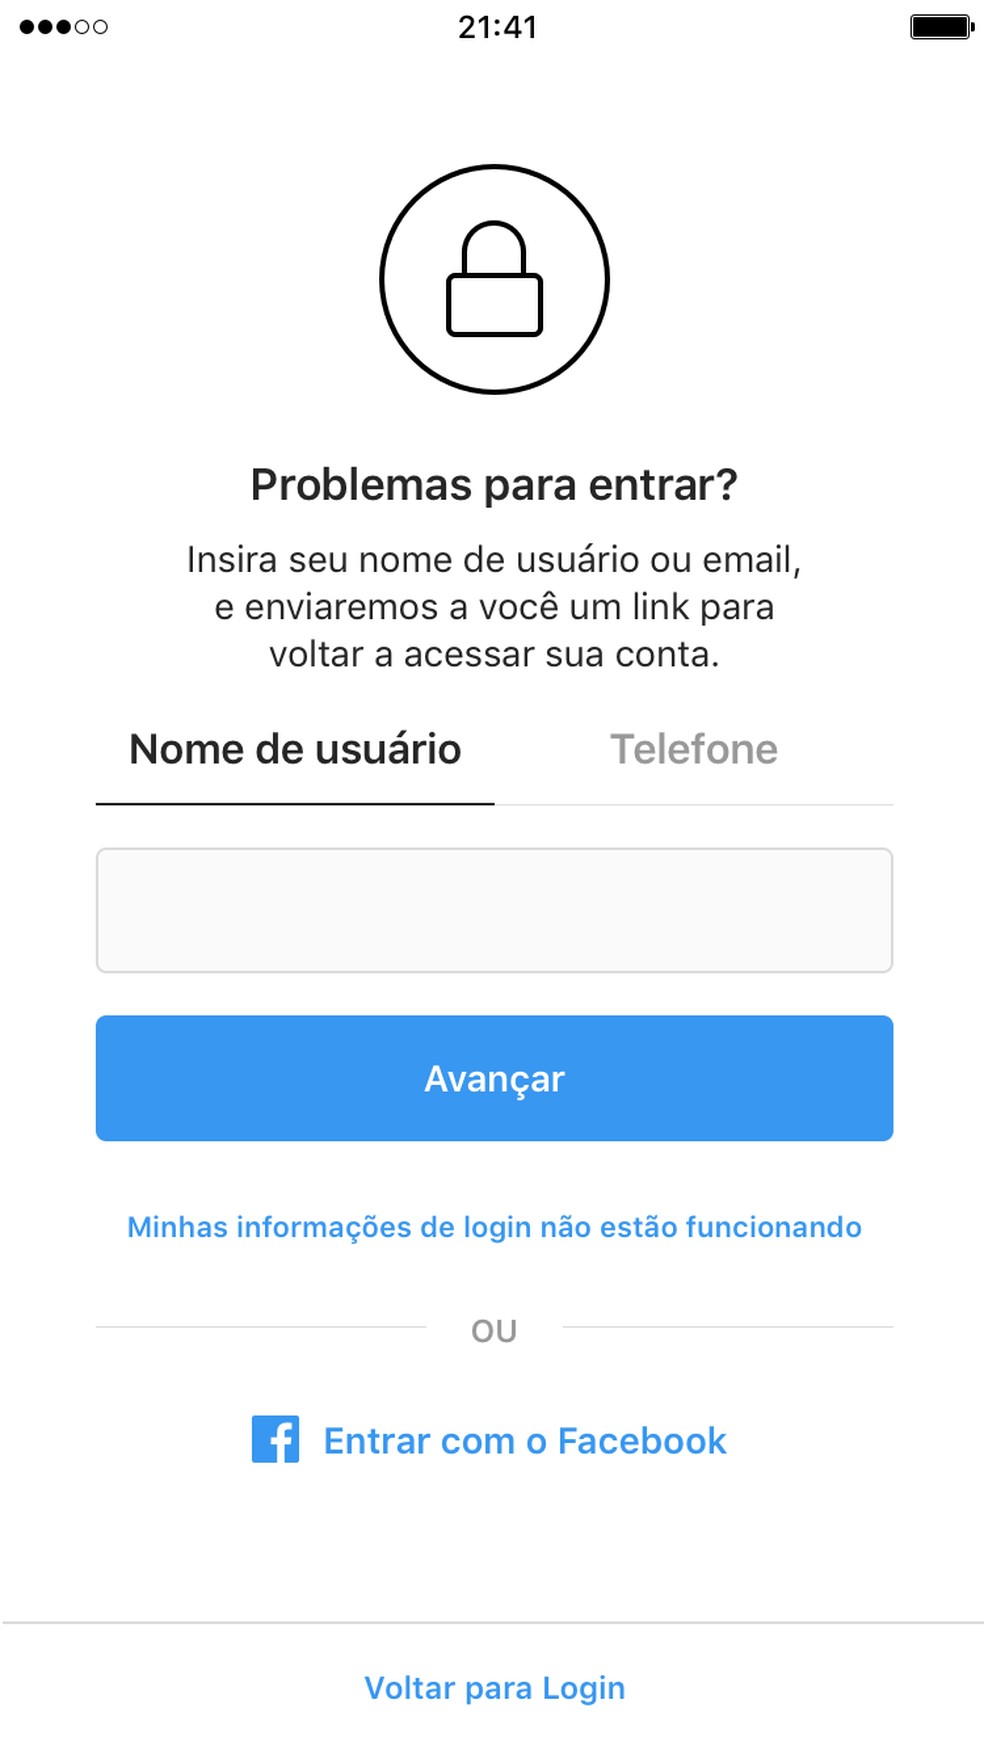 Instagram Descubra Se Seu Perfil Corre Risco De Ser Hackeado Redes Sociais Techtudo - roblox 2021 hackar sua conta hackada